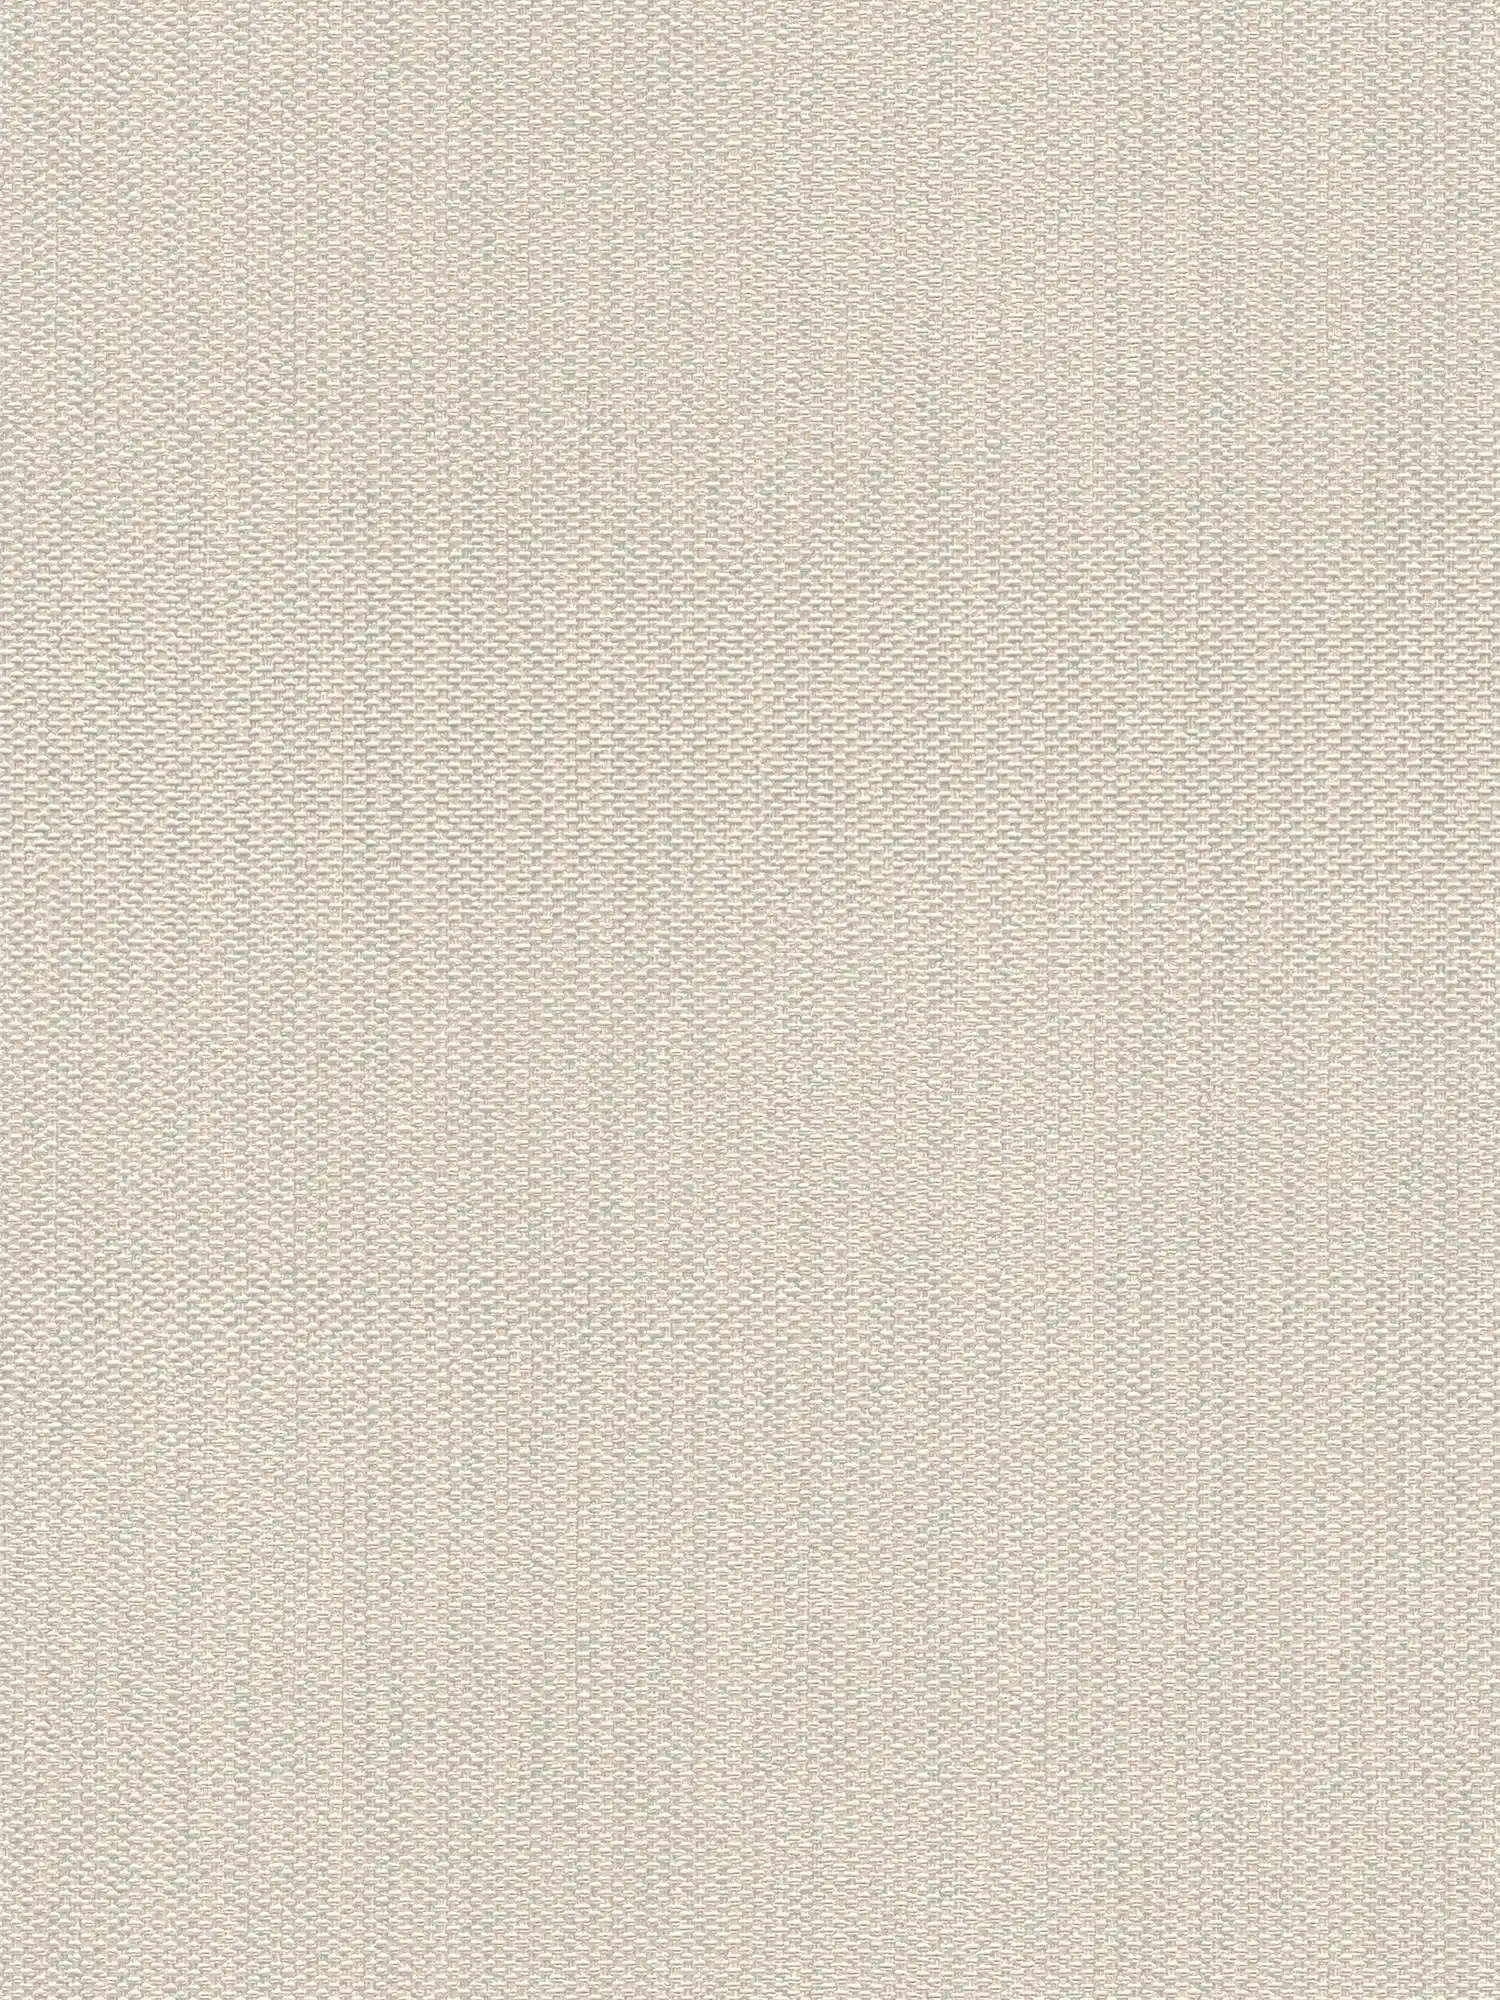 Vliesbehang in textiellook - crème, grijs
